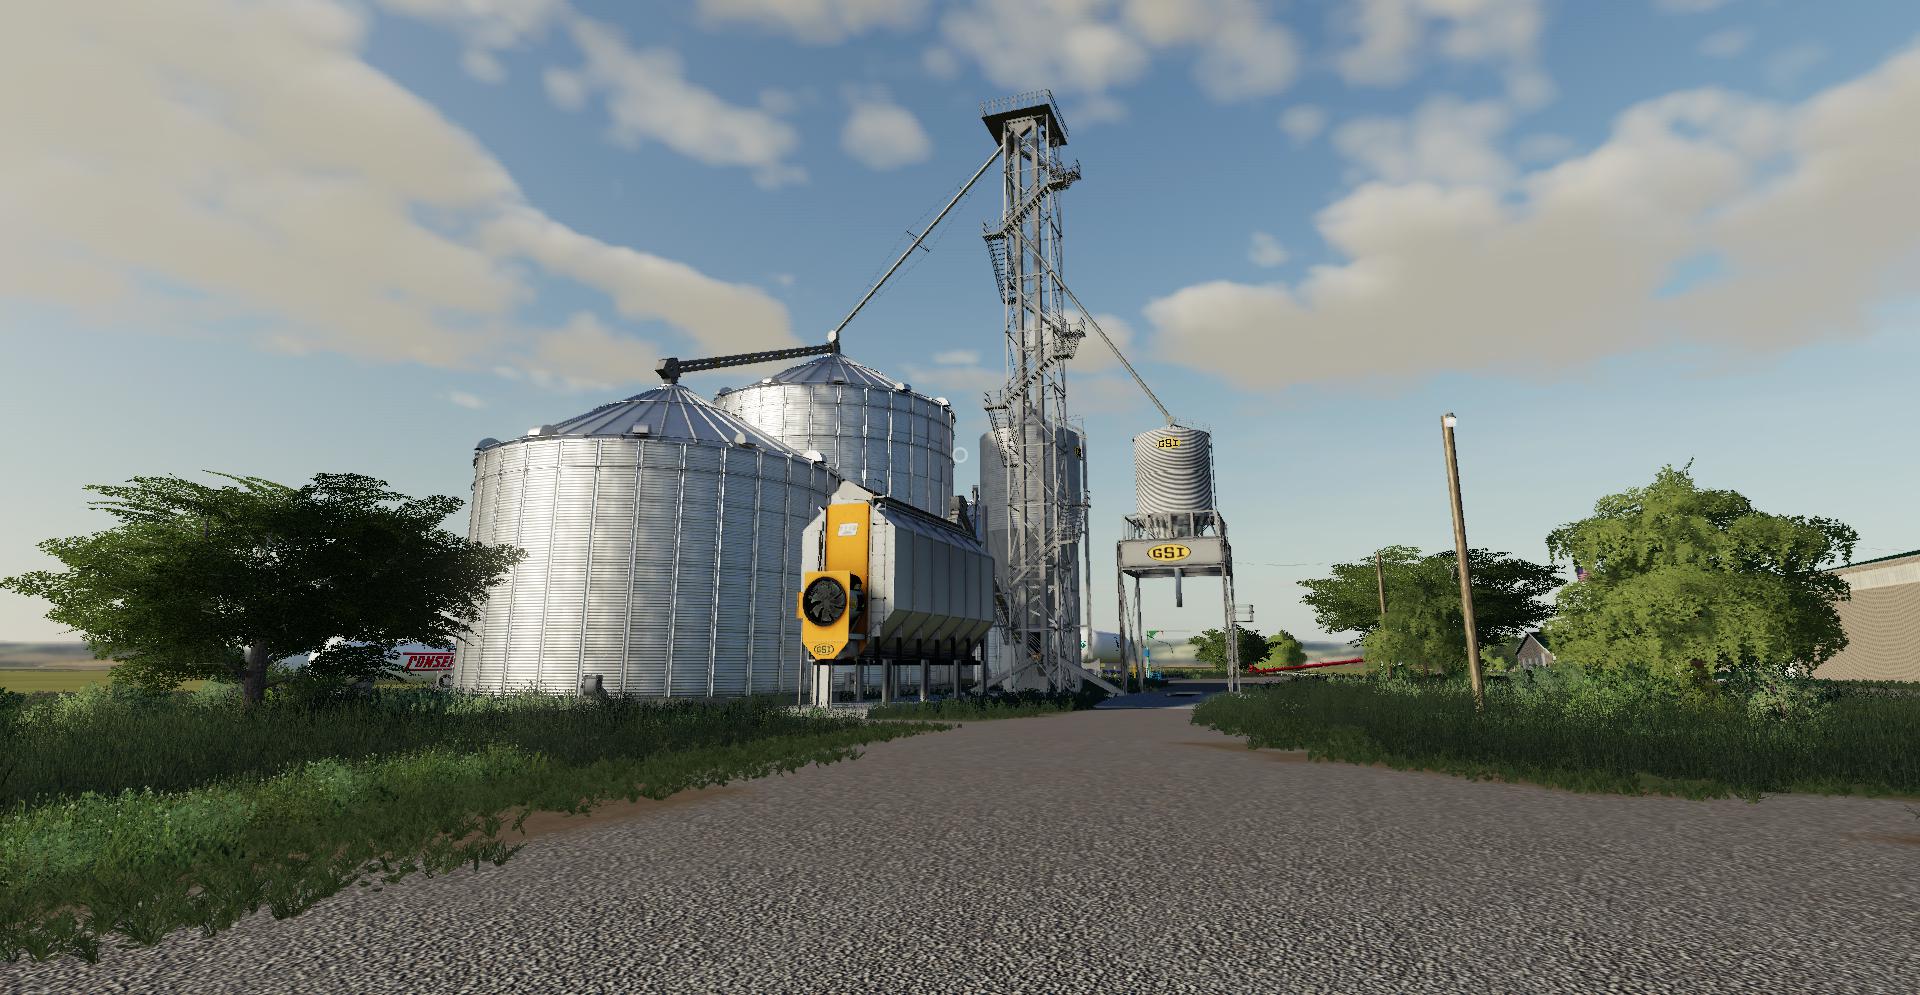 Gsi Grain Storage Bins V10 Fs19 Farming Simulator 19 Mod Fs19 Mod 9006